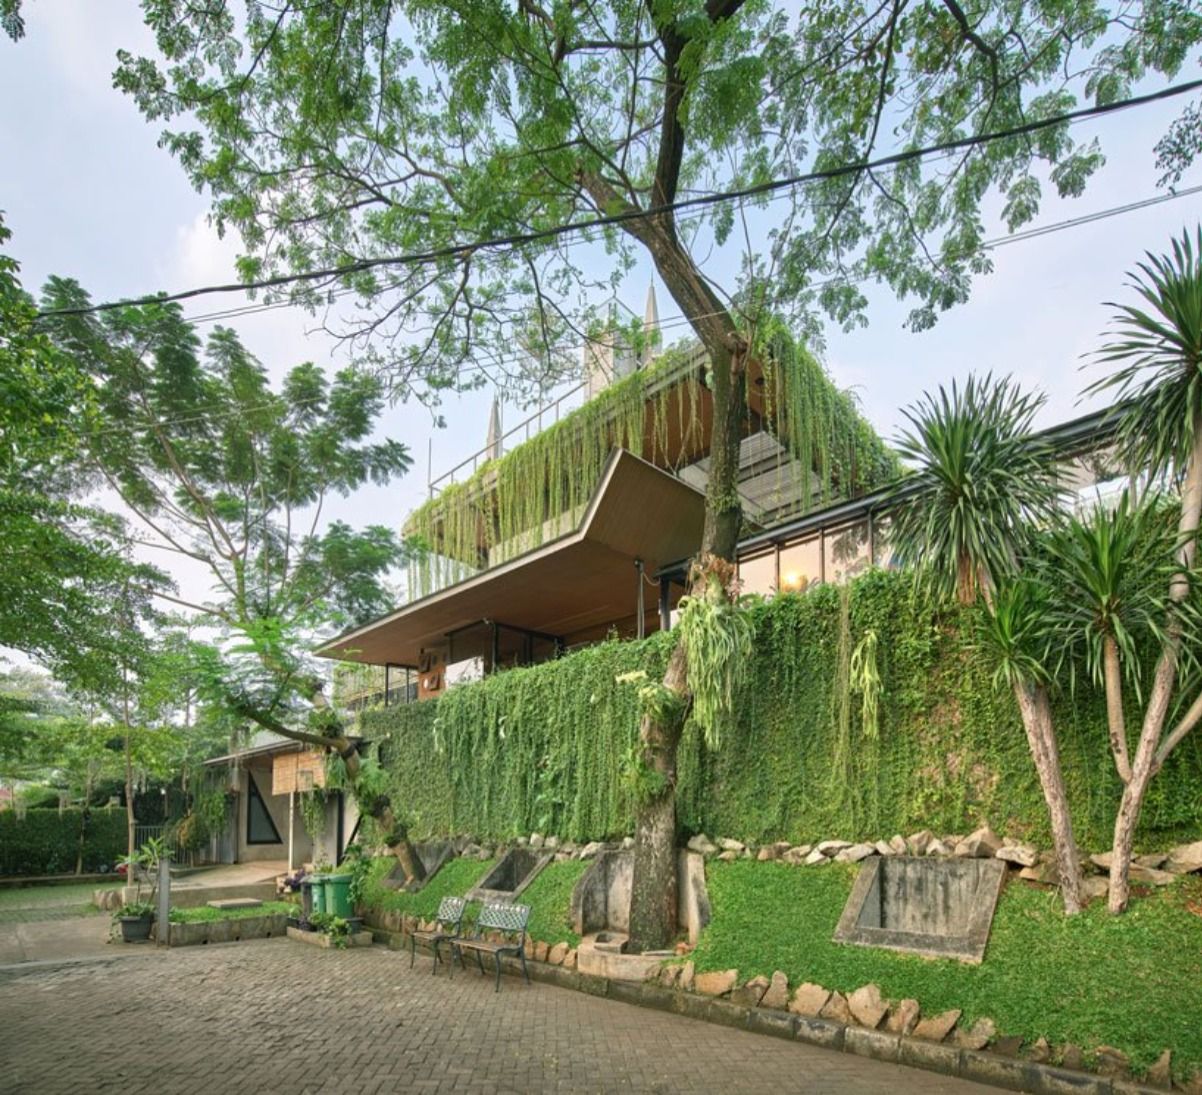 Guha Khu phuc hop xanh Raw Architecture kienviet 12 1 - Guha- Đưa thiên nhiên vào kiến trúc hiện đại | Raw